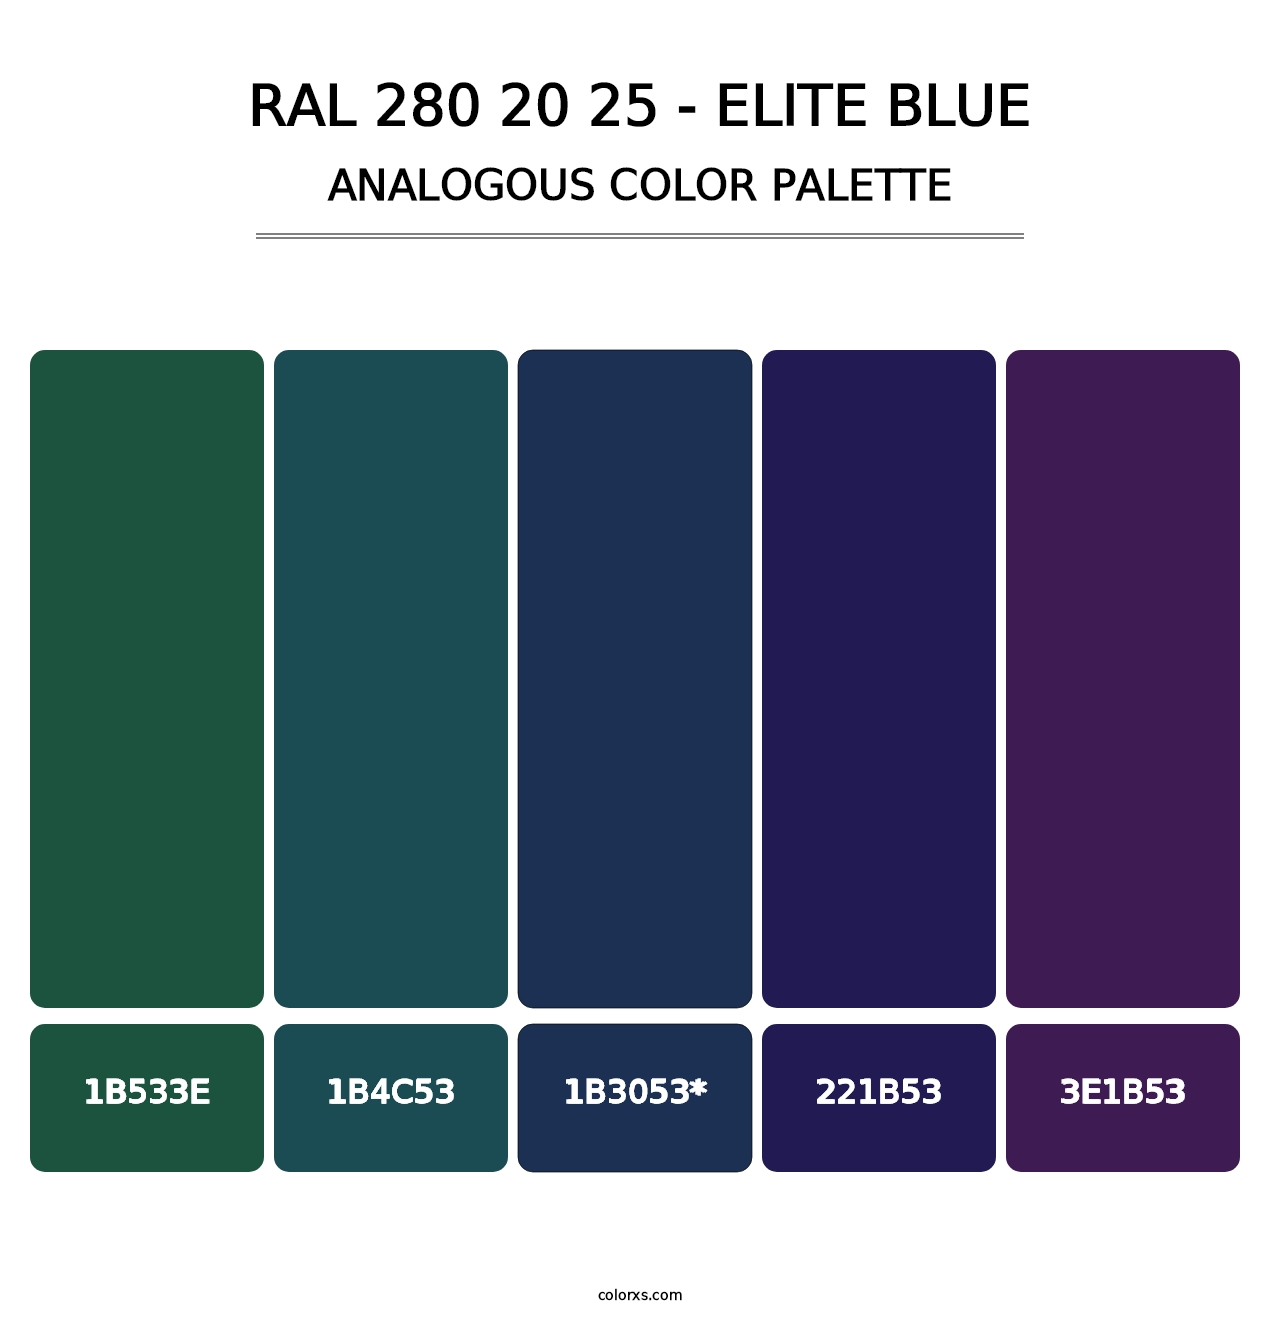 RAL 280 20 25 - Elite Blue - Analogous Color Palette